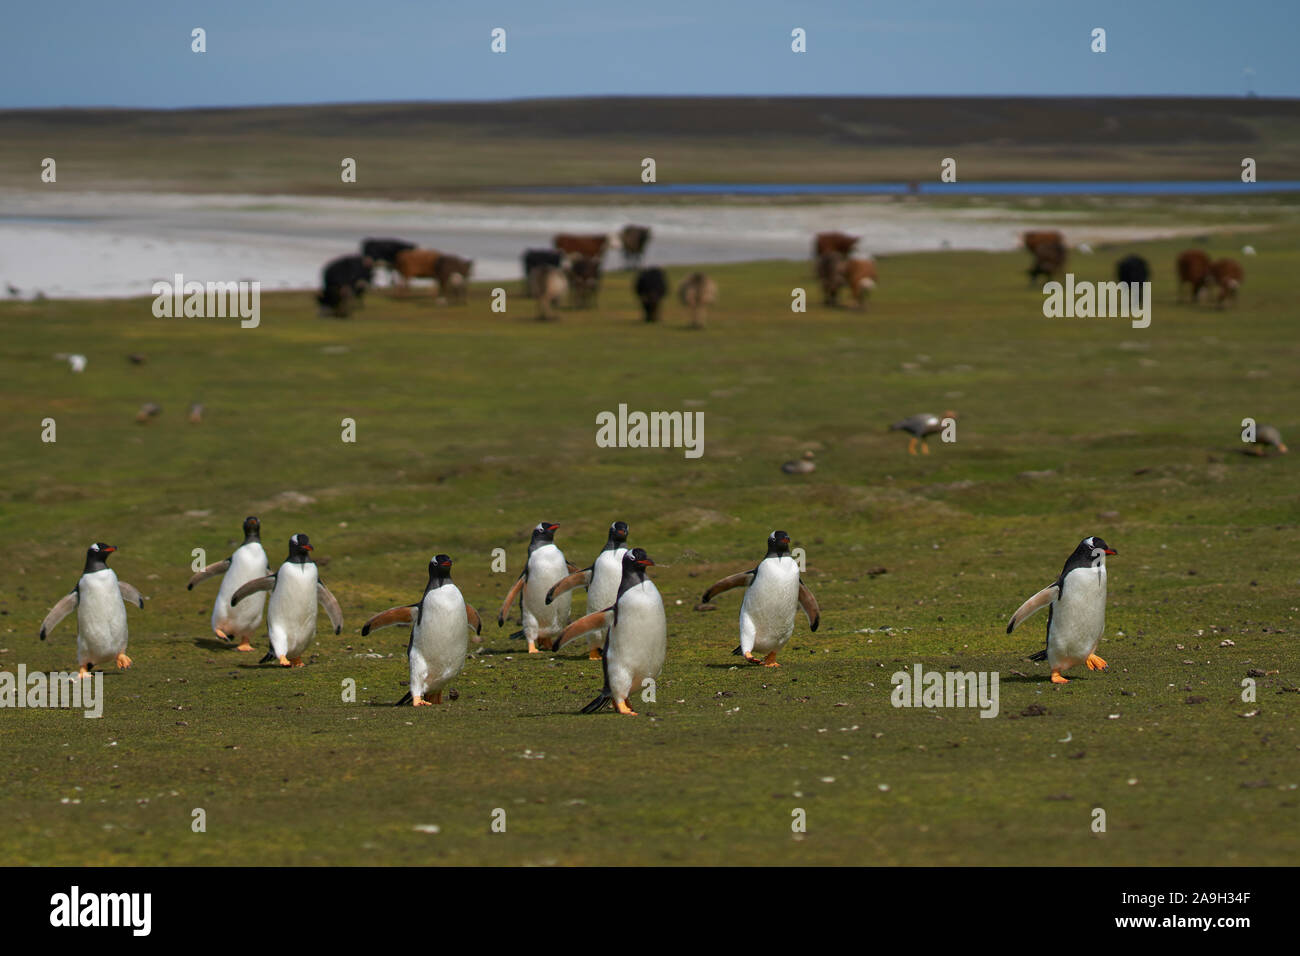 Eselspinguine (Pygoscelis papua) Rückkehr in die Kolonie über Wiesen Weiden von Vieh auf der trostlosen Insel in der Falkland Inseln. Stockfoto